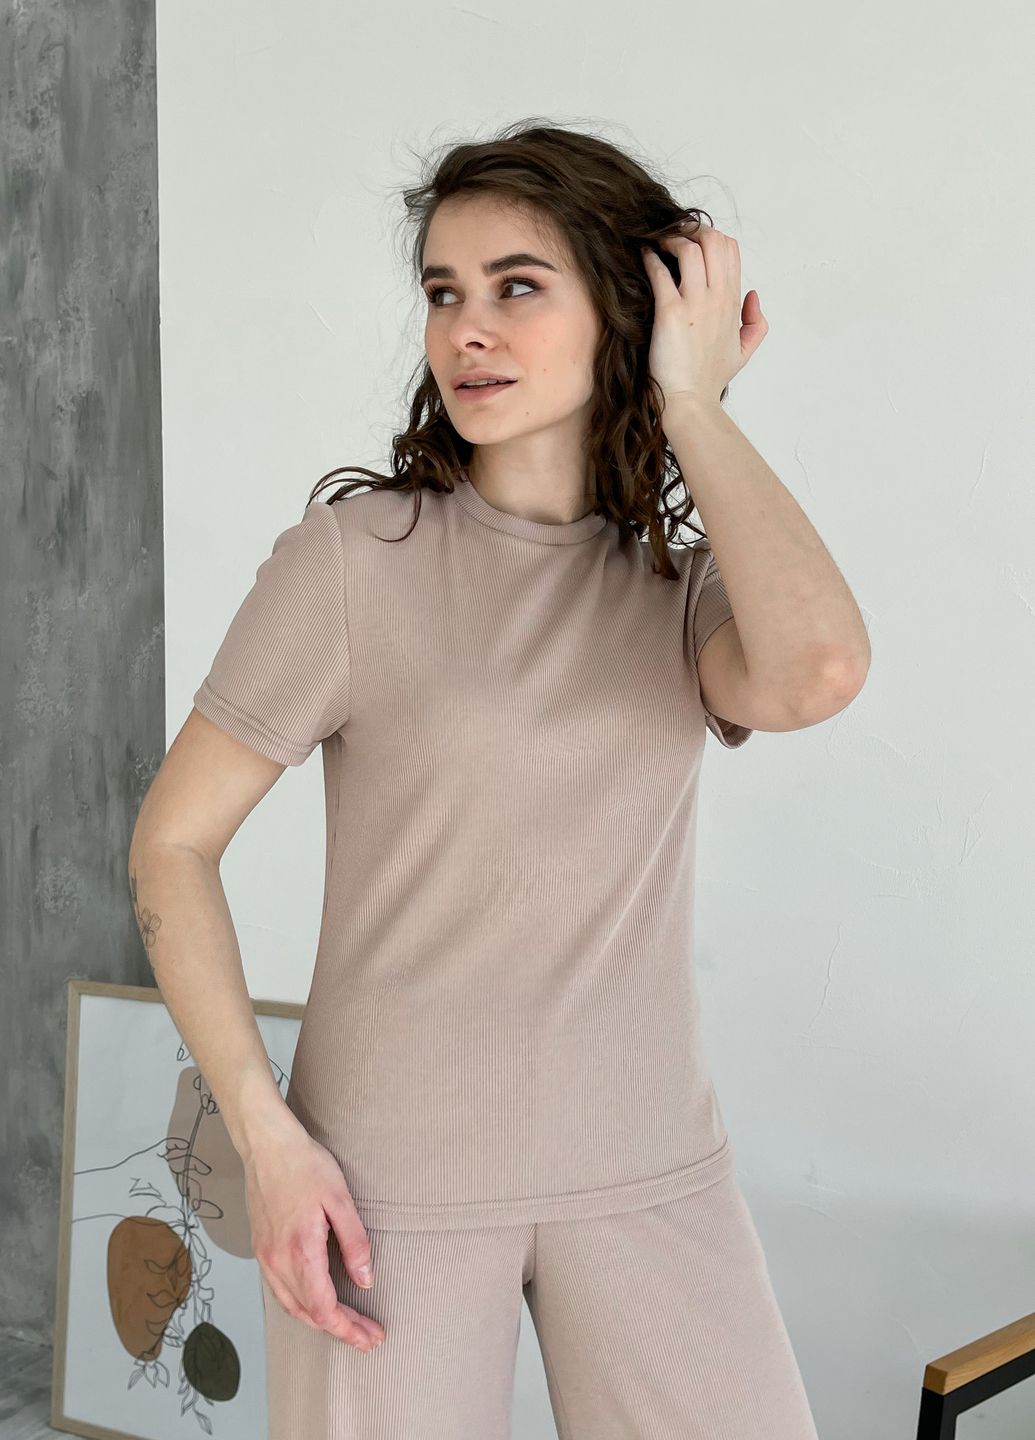 Купить Костюм женский в рубчик футболка со штанами клеш бежевый Merlini Монцано 100000523, размер XS-M (40-44) в интернет-магазине